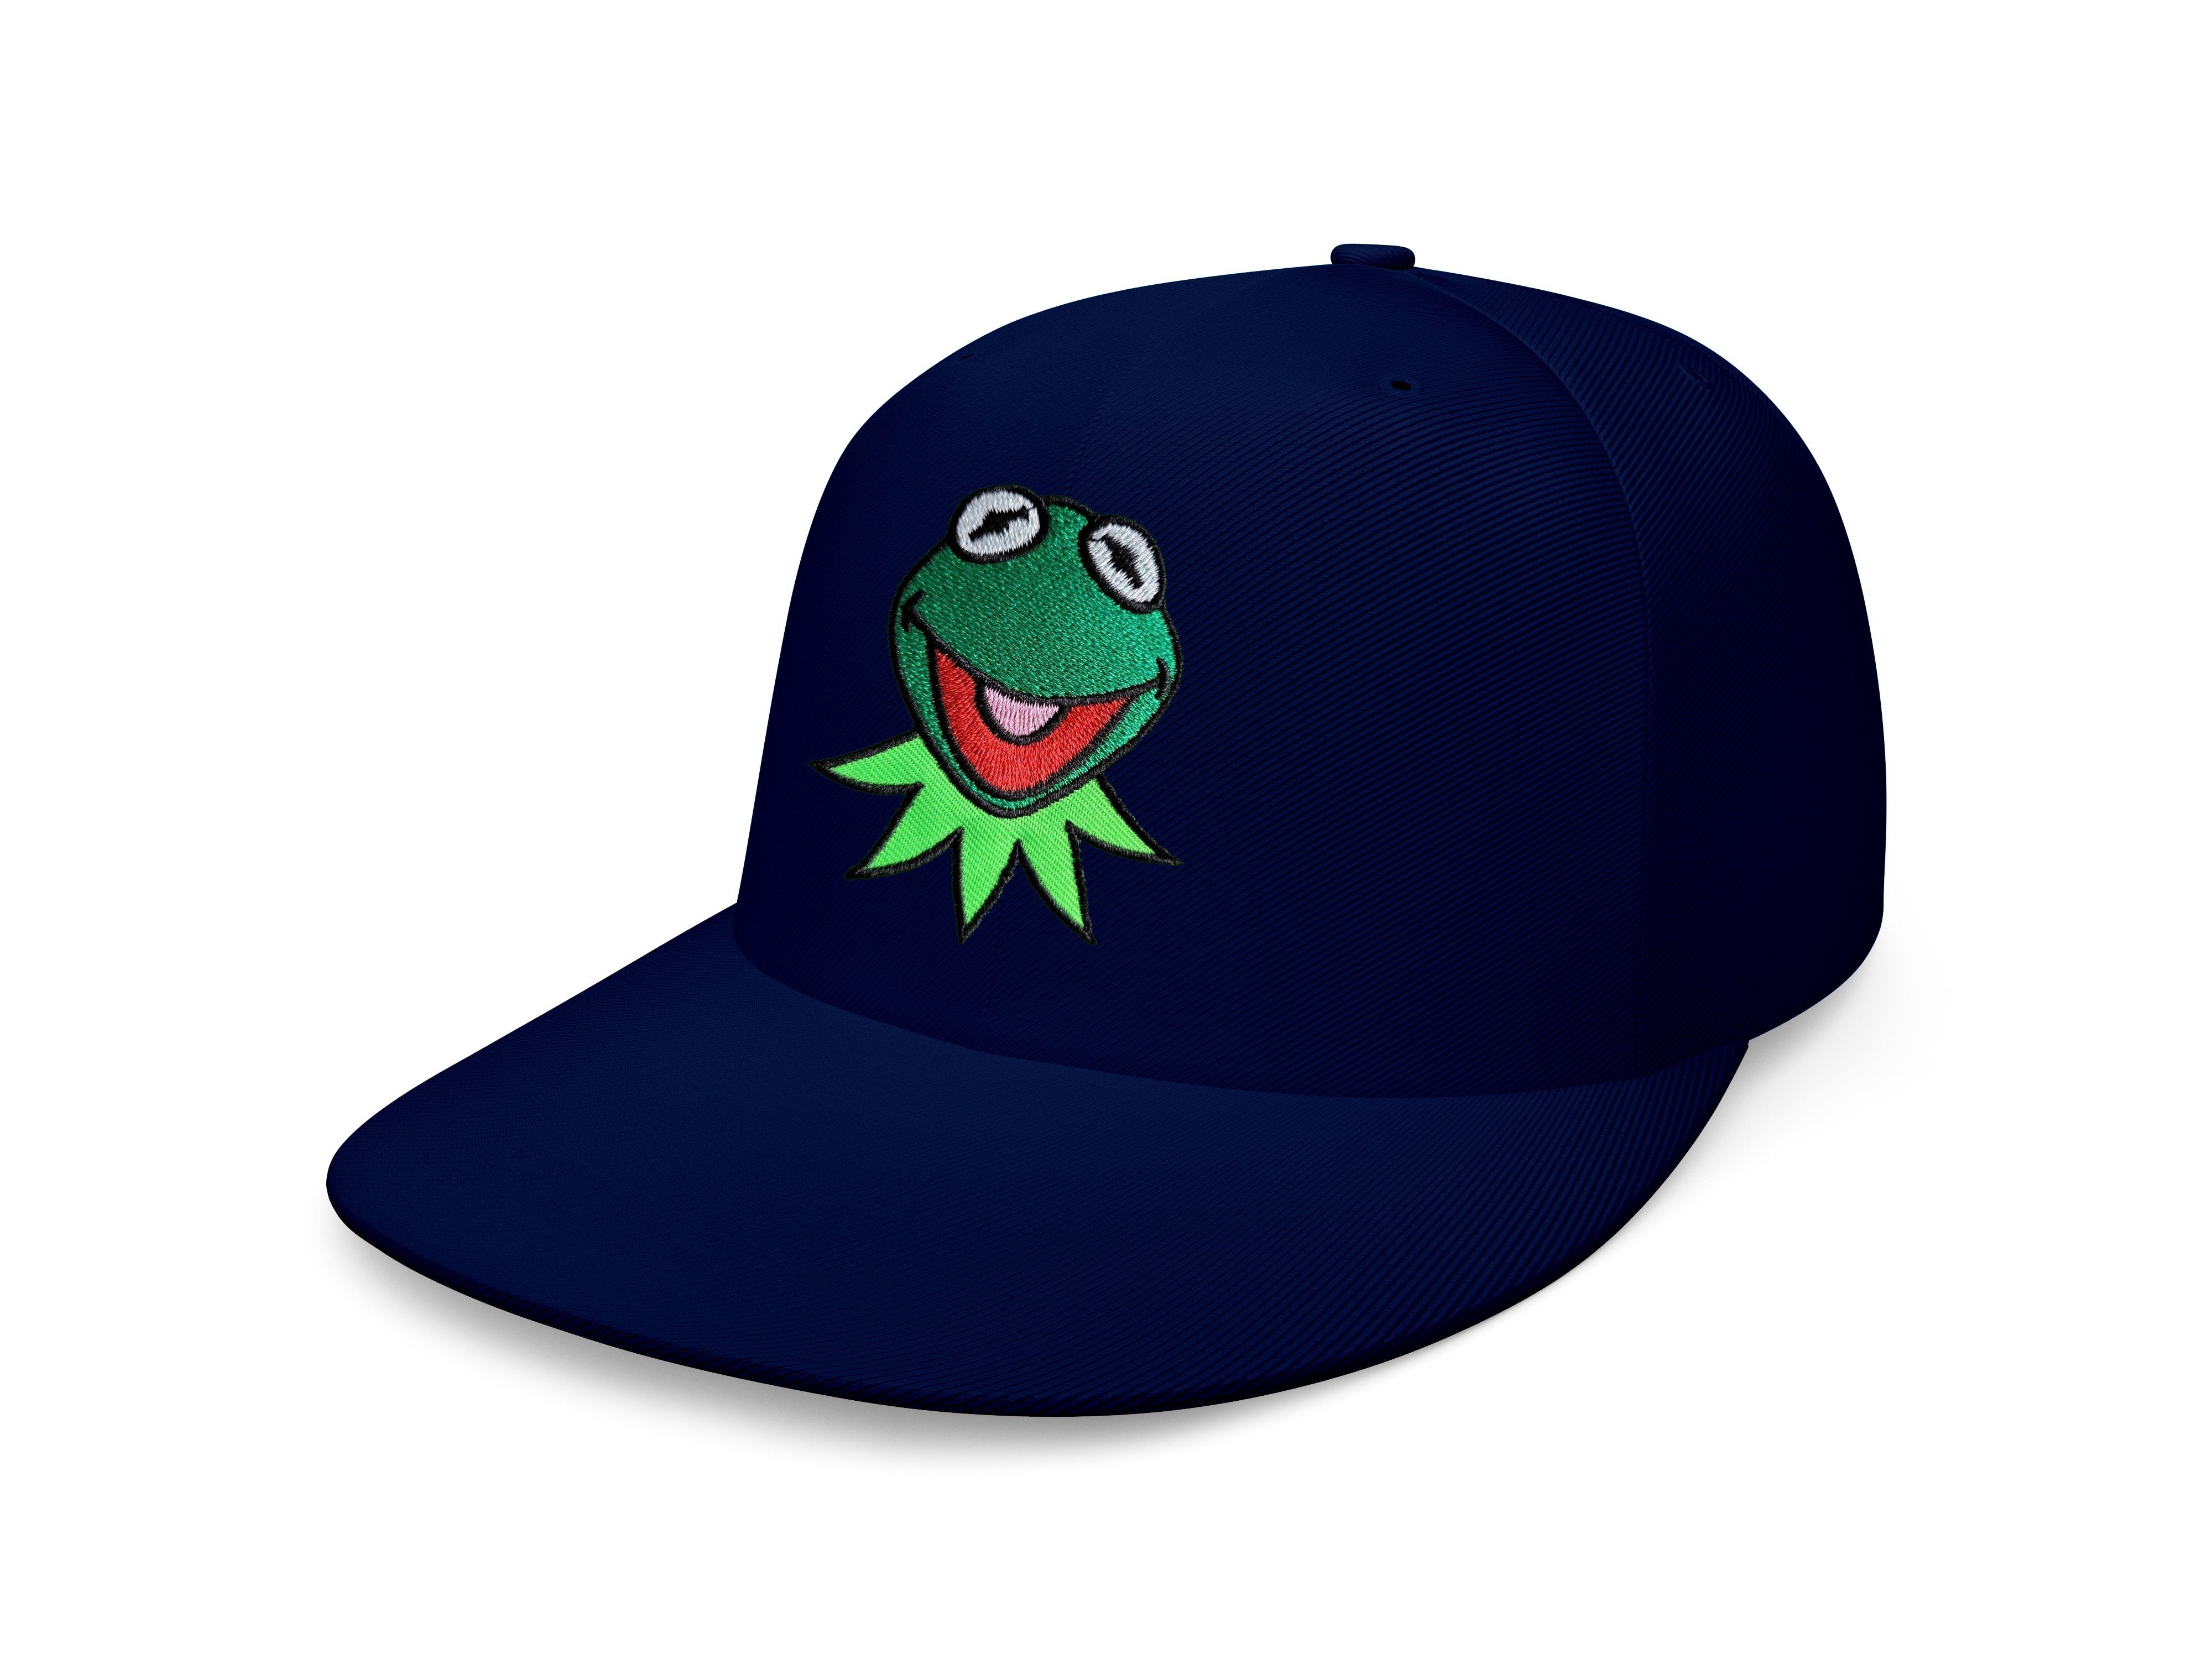 Blondie & Brownie Navyblau Cap Stick Muppet Baseball Snapback Frosch Patch Kermit Frog Unisex Erwachsene